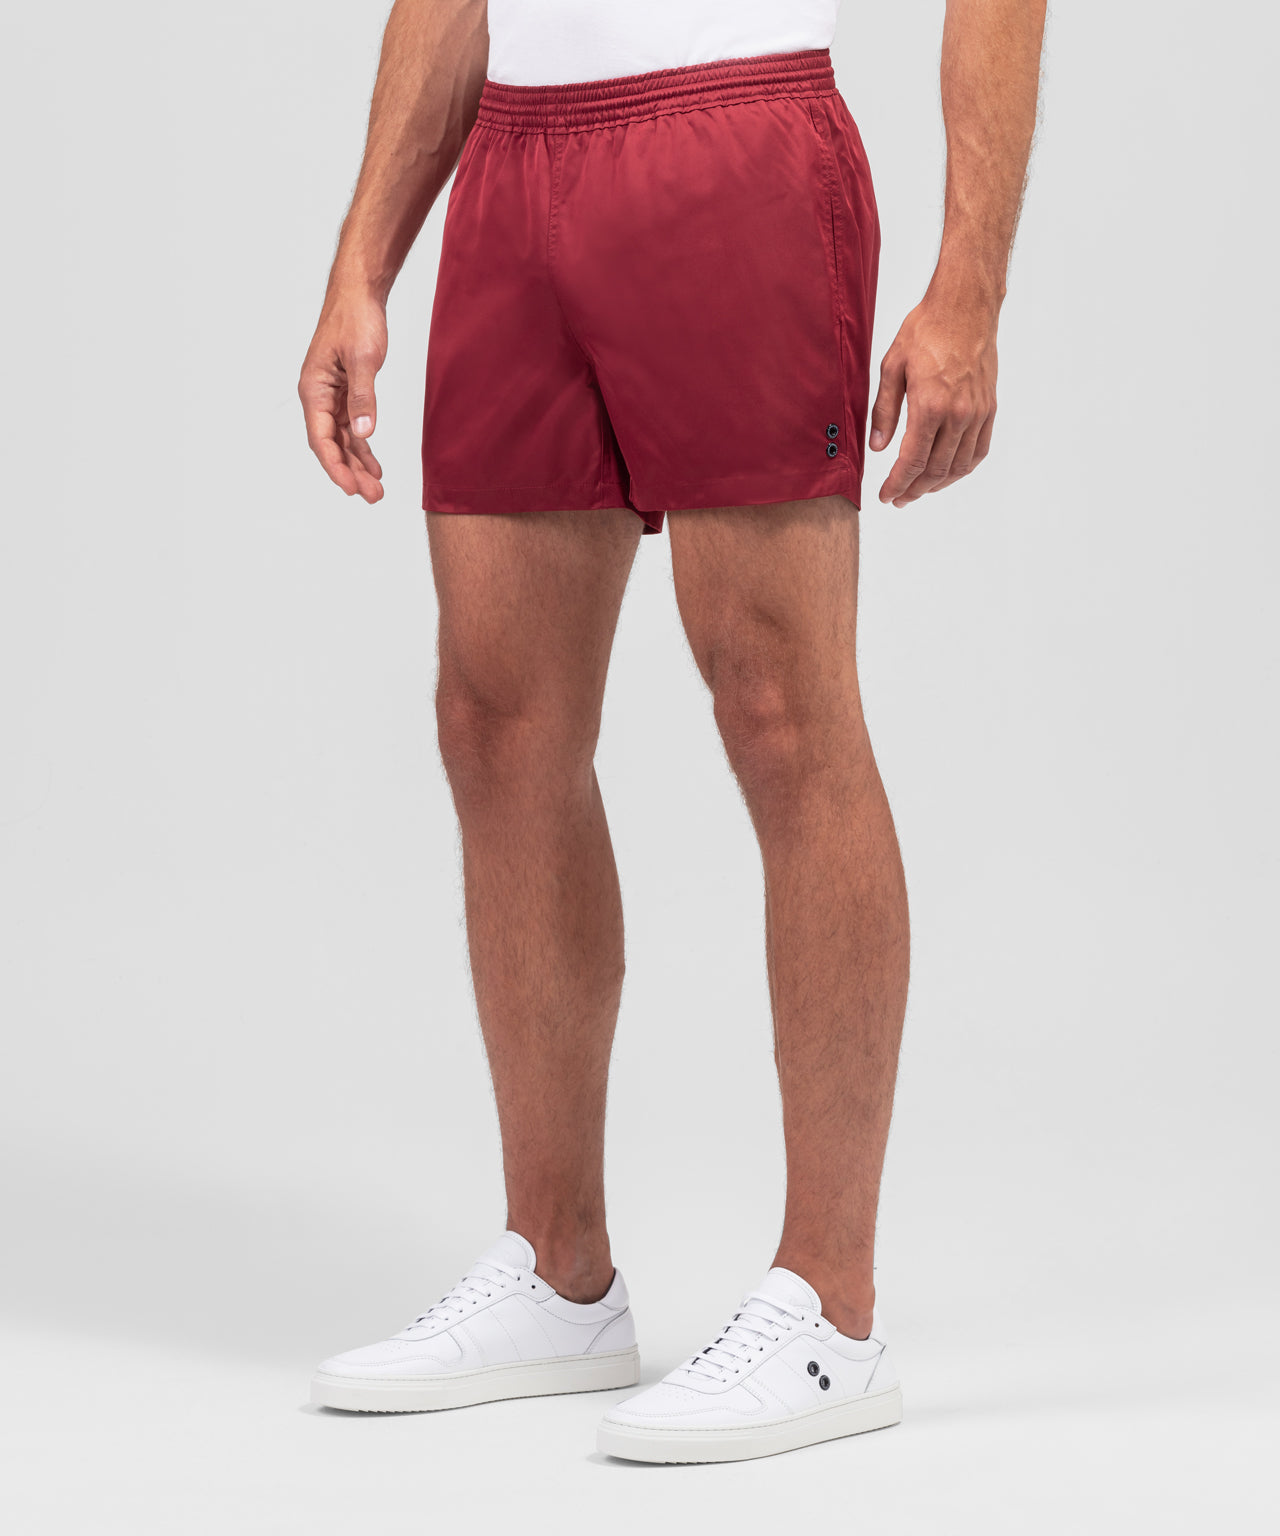 Exerciser Shorts: Burgundy Red